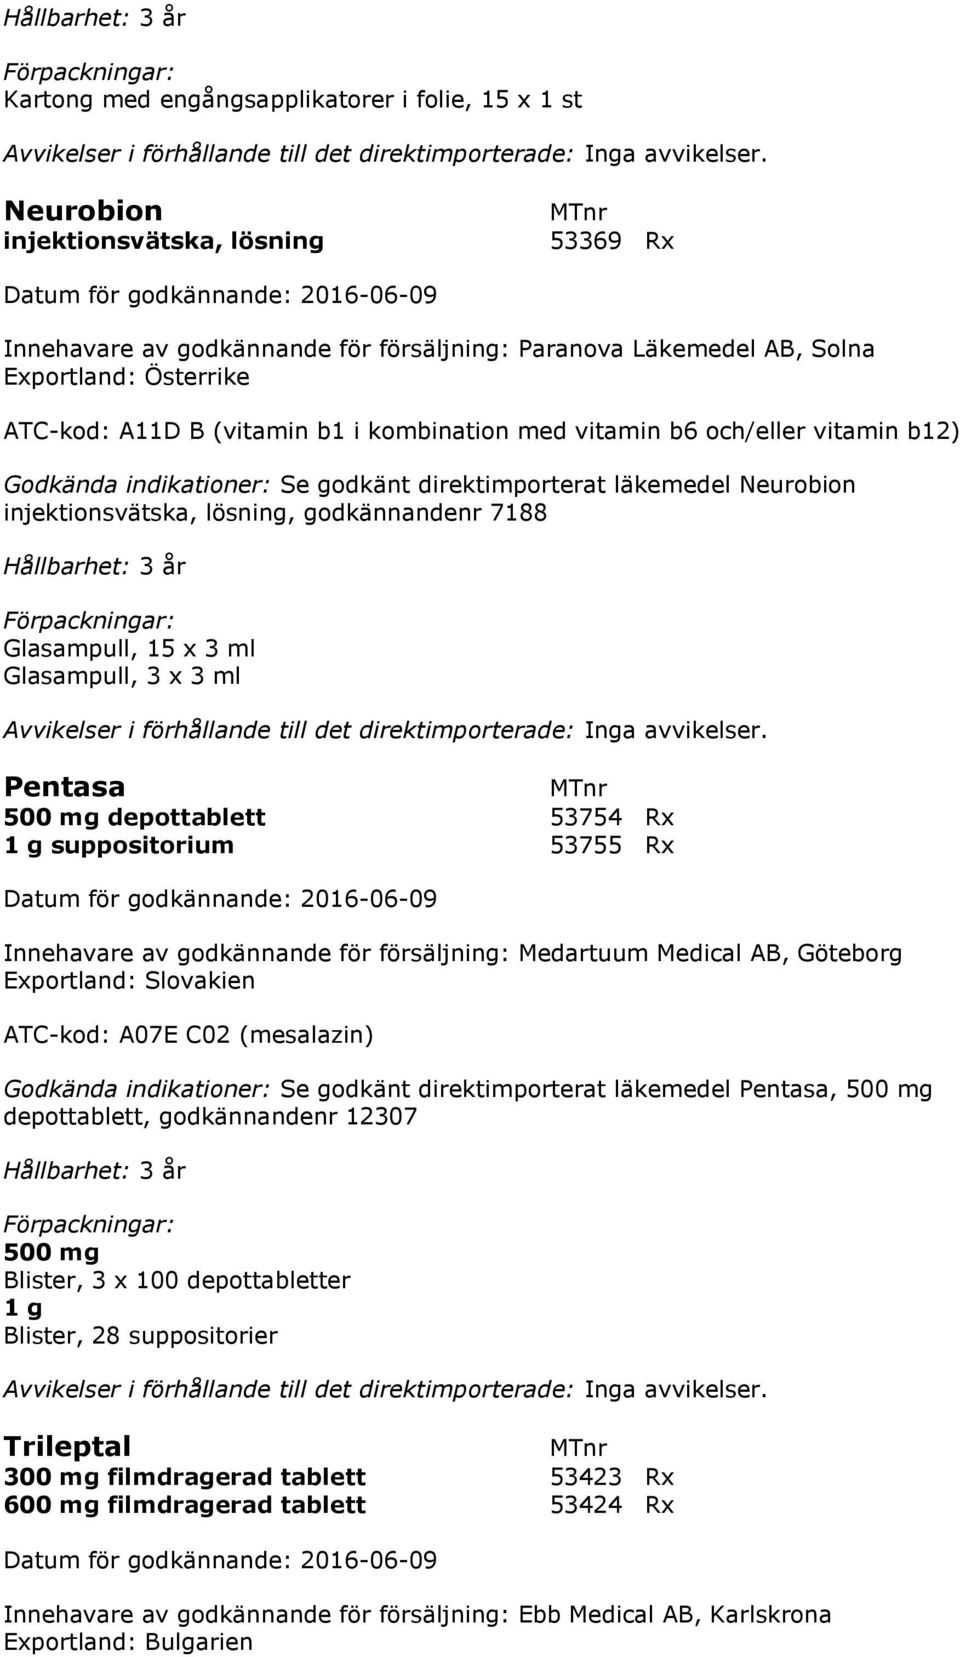 g suppositorium 53755 Rx Innehavare av godkännande för försäljning: Medartuum Medical AB, Göteborg Exportland: Slovakien ATC-kod: A07E C02 (mesalazin) Godkända indikationer: Se godkänt